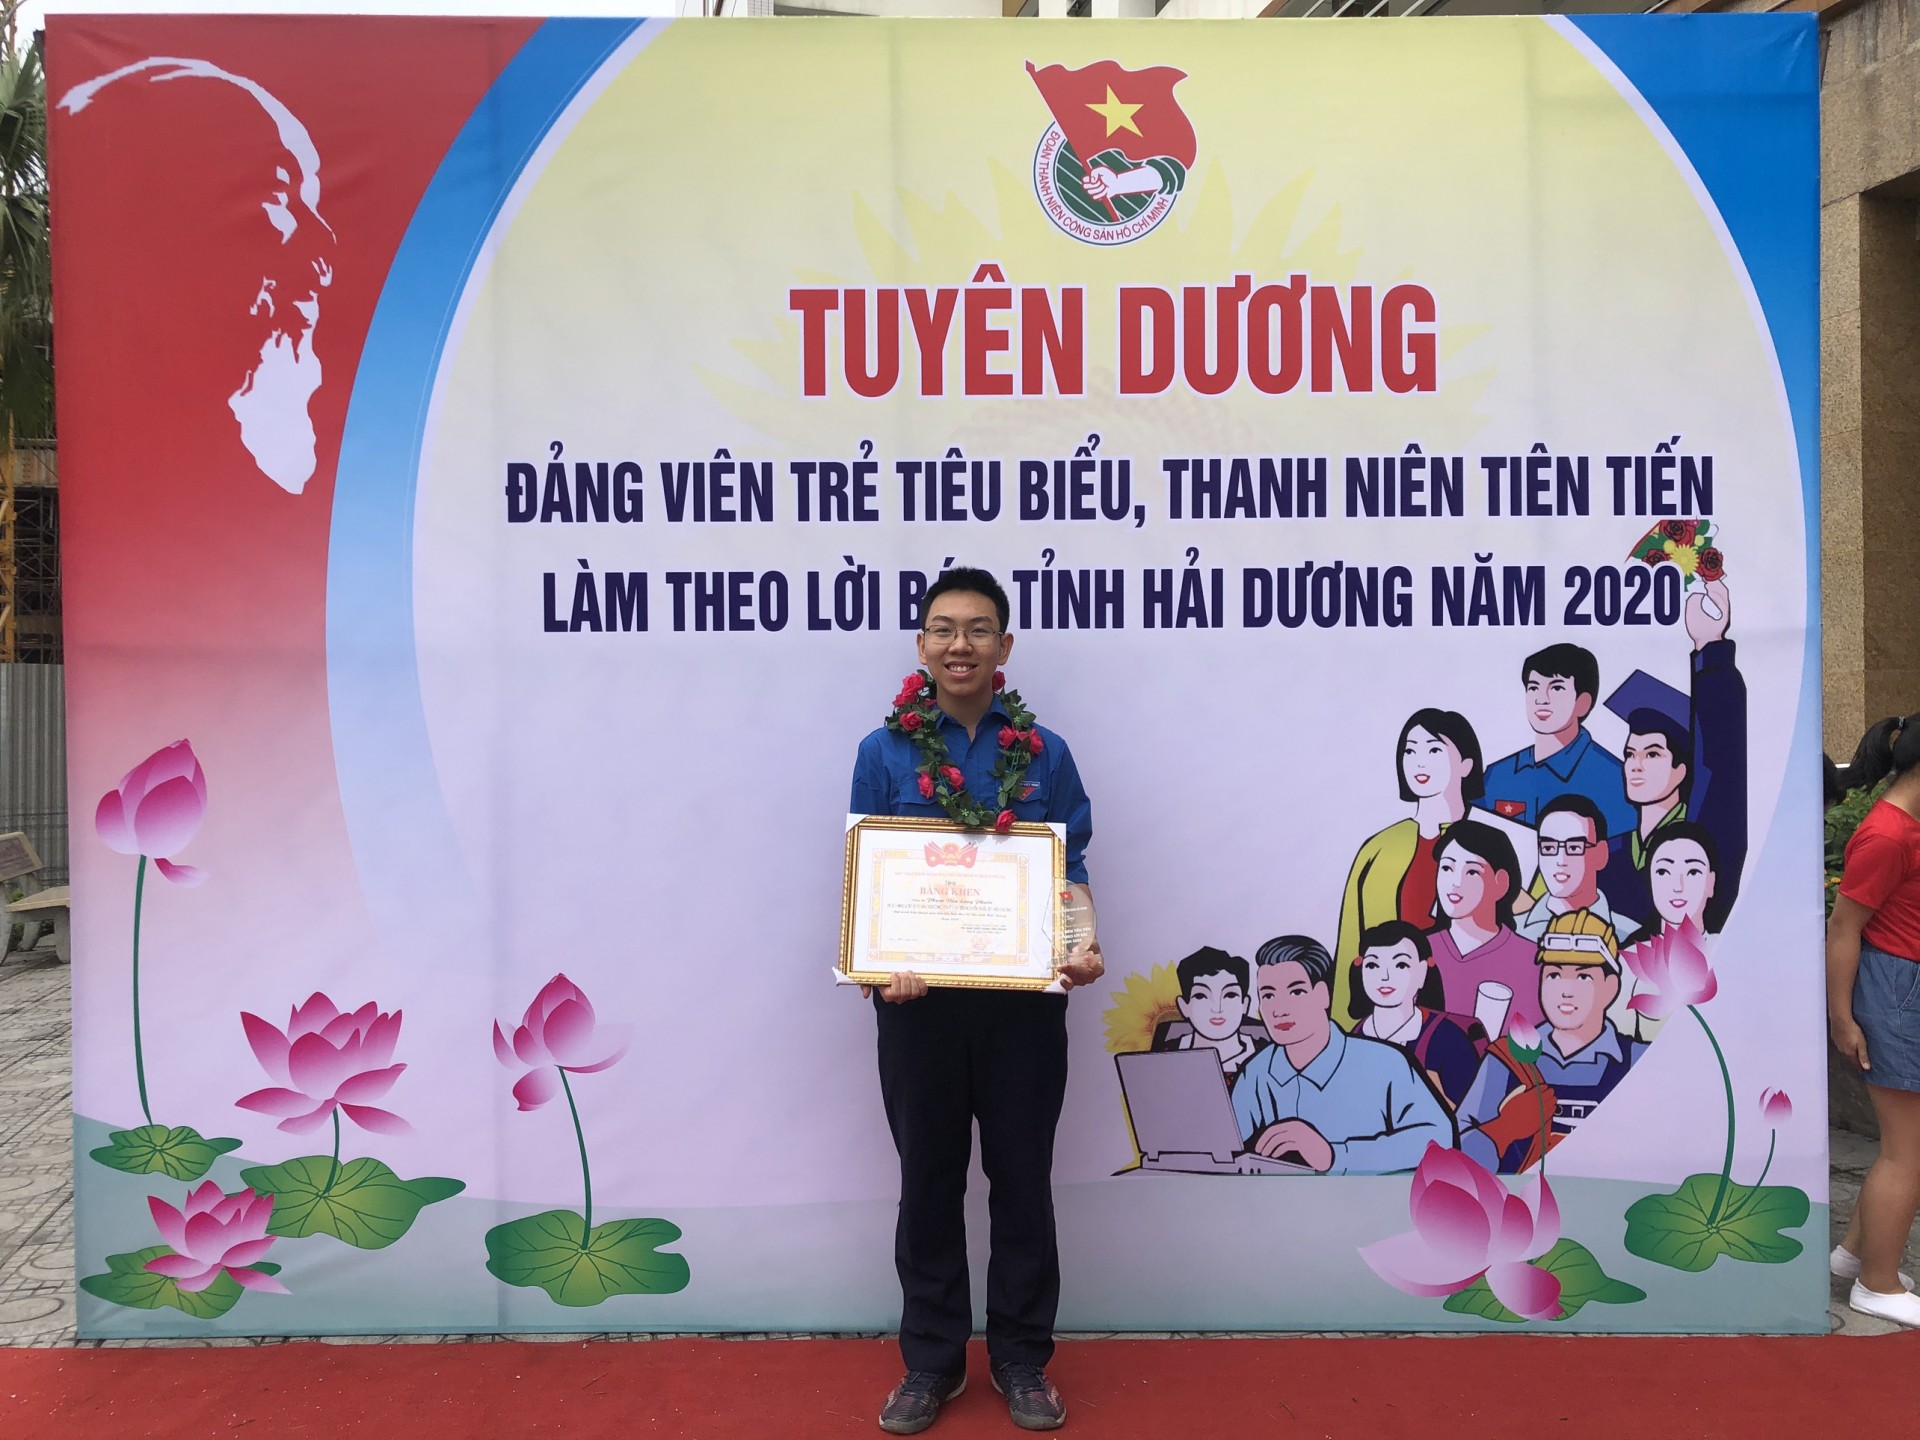 Năm học 2018-2019 Phạm Văn Long Phước đạt giải Nhì quốc gia môn Toán năm học 2018-2019 và tiếp tục đạt giải nhì trong kì thi năm nay.